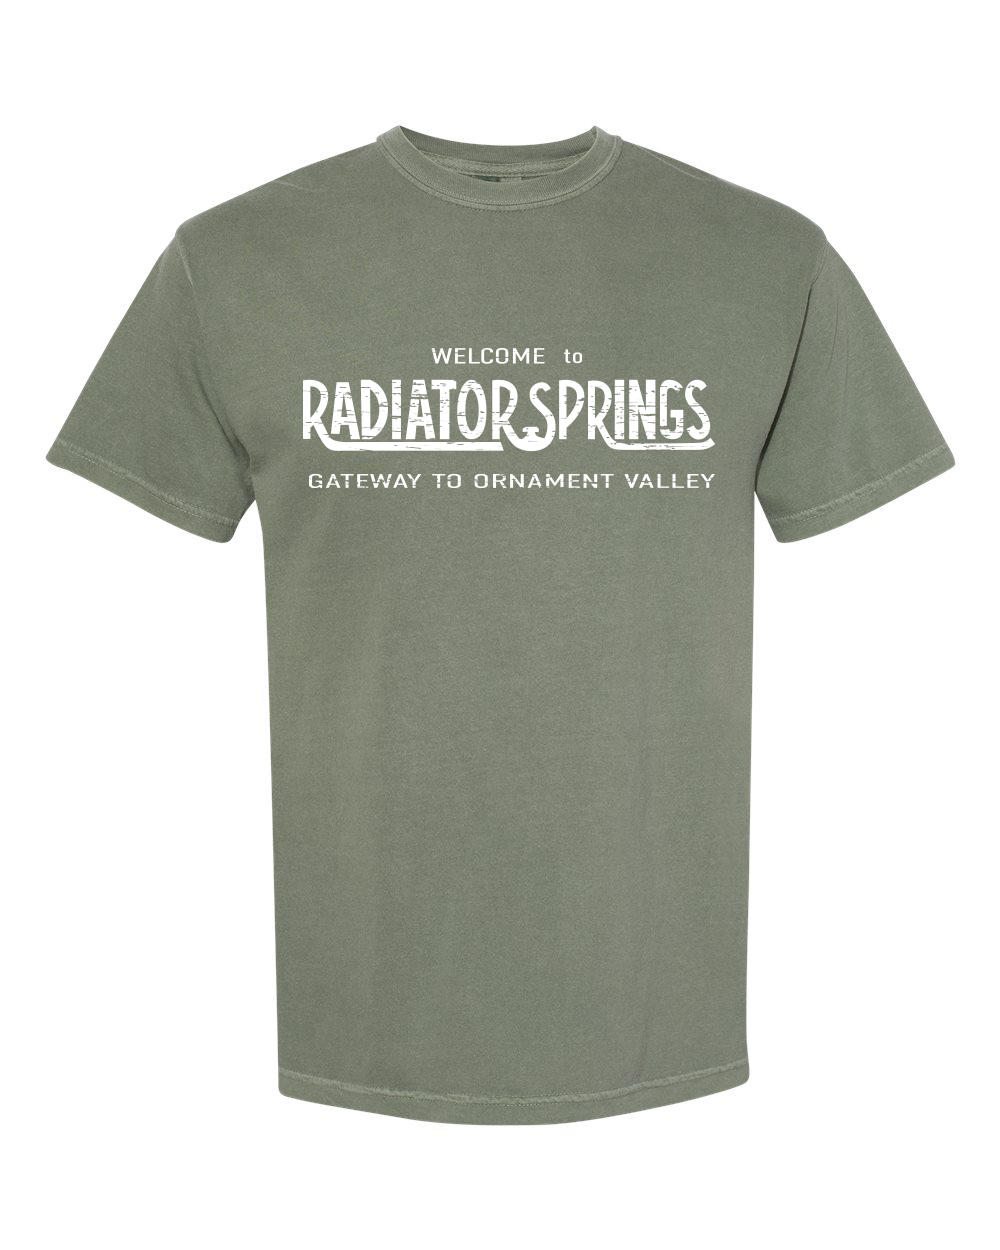 Radiator Springs unisex short sleeve t-shirt